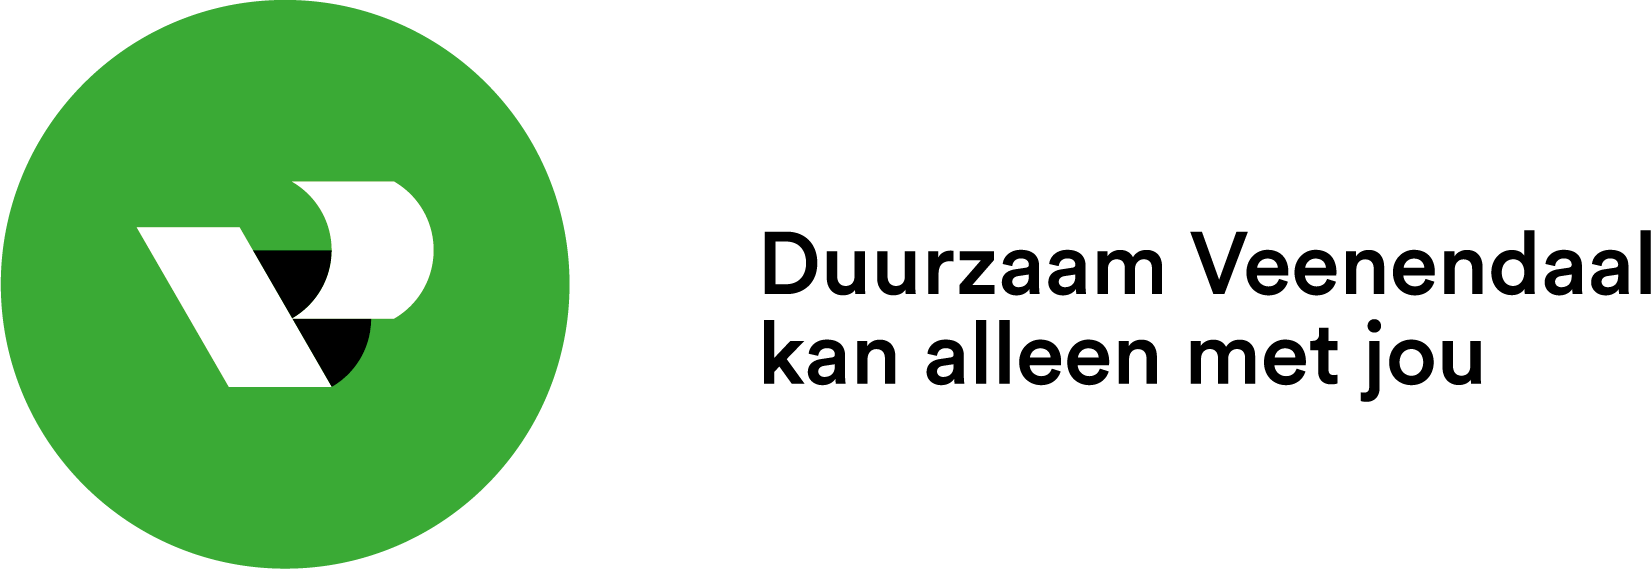 Logo Duurzaam Veenendaal, Duurzaam Veenendaal kan alleen met jou